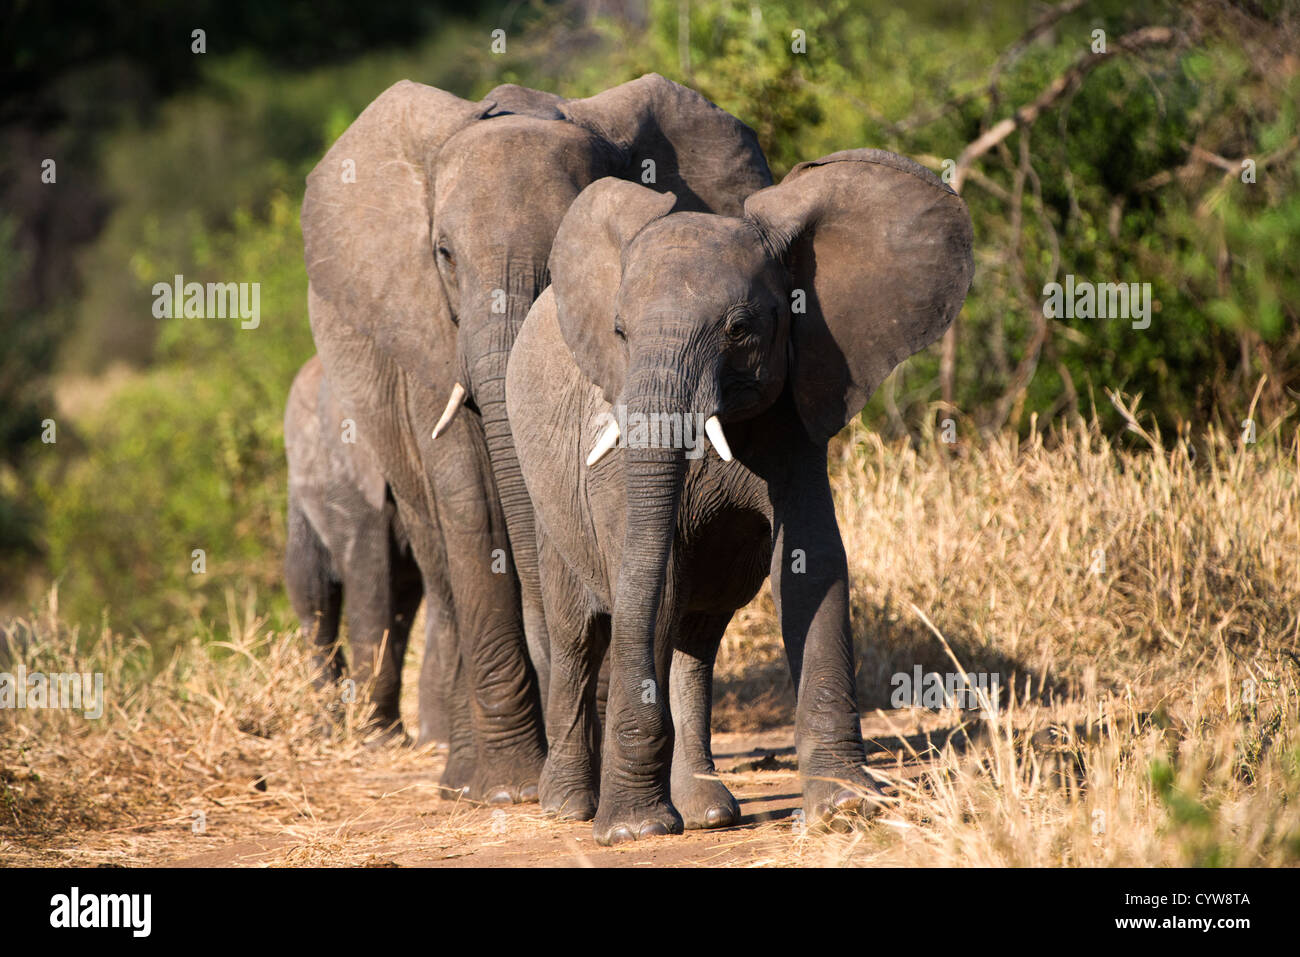 TARANGIRE-NATIONALPARK, Tansania - Eine Elefantenfamilie im Tarangire-Nationalpark im Norden Tansanias, nicht weit vom Ngorongoro-Krater und der Serengeti. Der Ngorongoro-Krater, der zum UNESCO-Weltkulturerbe gehört, ist ein riesiger vulkanischer Krater im Norden Tansanias. Sie wurde vor 2-3 Millionen Jahren gegründet, hat einen Durchmesser von etwa 20 Kilometern und ist die Heimat vielfältiger Tiere, einschließlich der „Big Five“-Wildtiere. Das Ngorongoro Conservation Area, bewohnt von den Maasai, enthält auch bedeutende archäologische Stätten wie die Olduvai-Schlucht und Laetoli, die Einblicke in die frühe menschliche Evolution bieten. Stockfoto